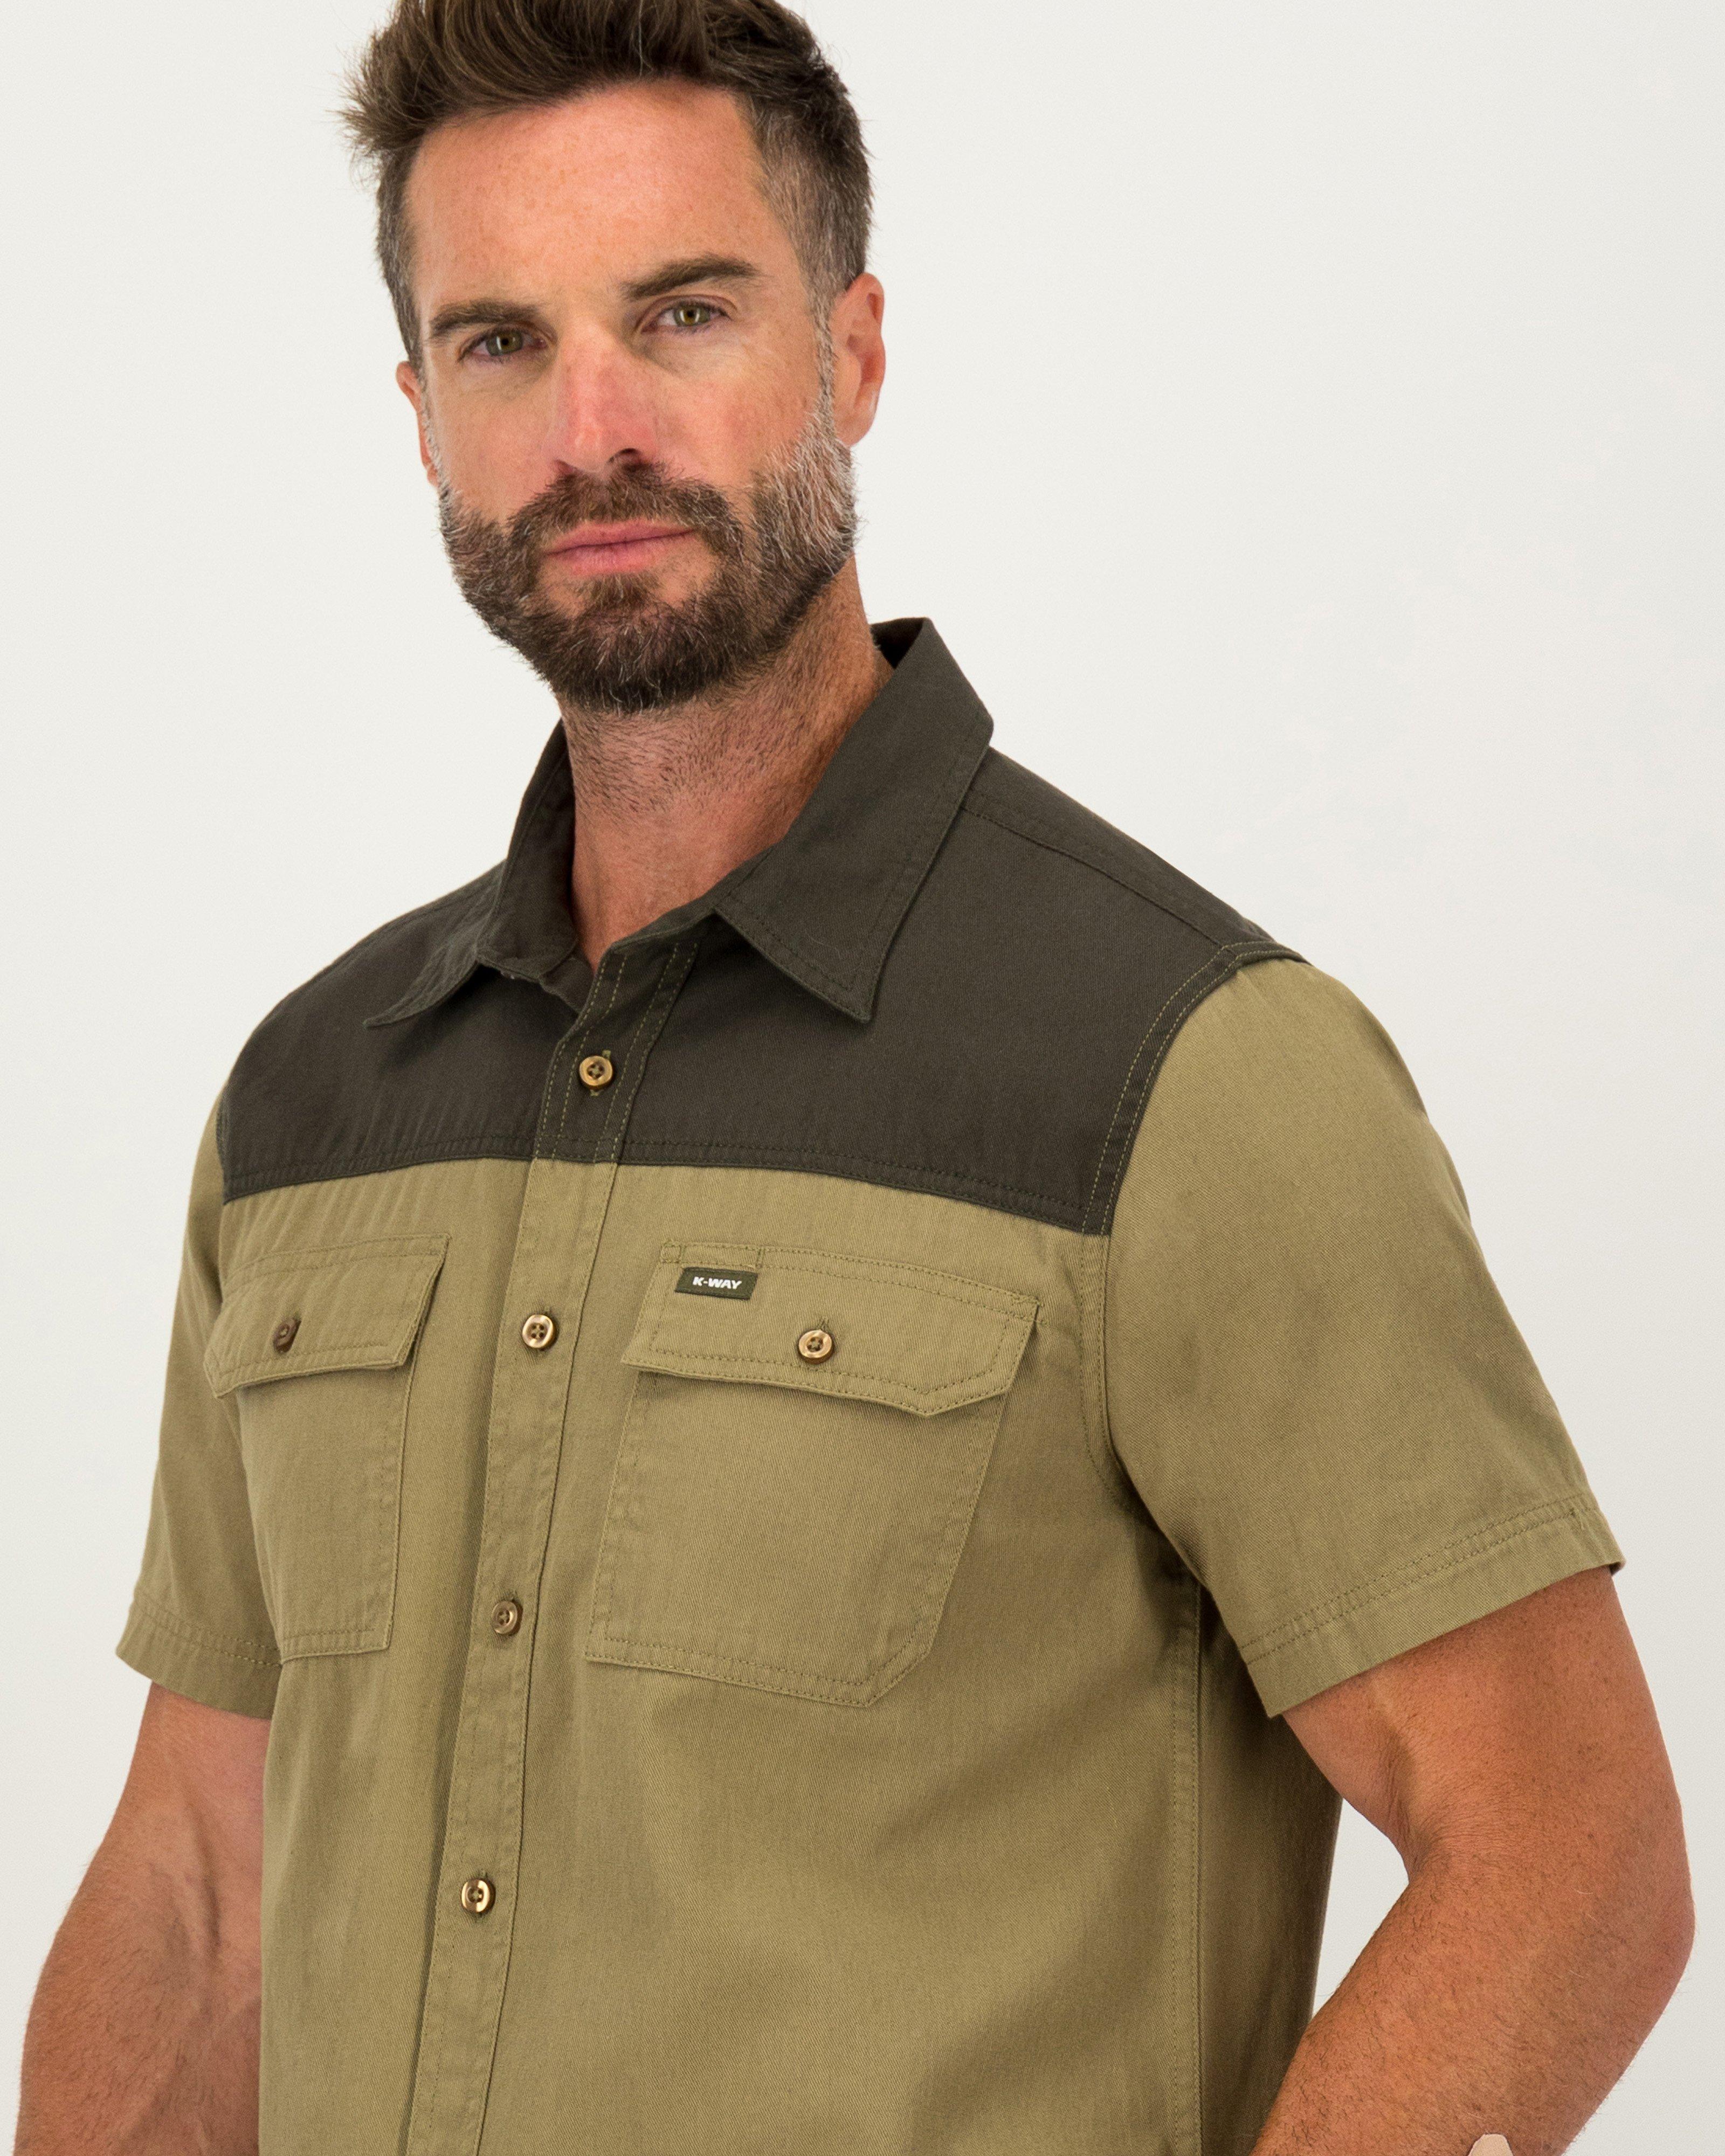 K-Way Elements Men's Safari Heavyweight Shirt -  Khaki